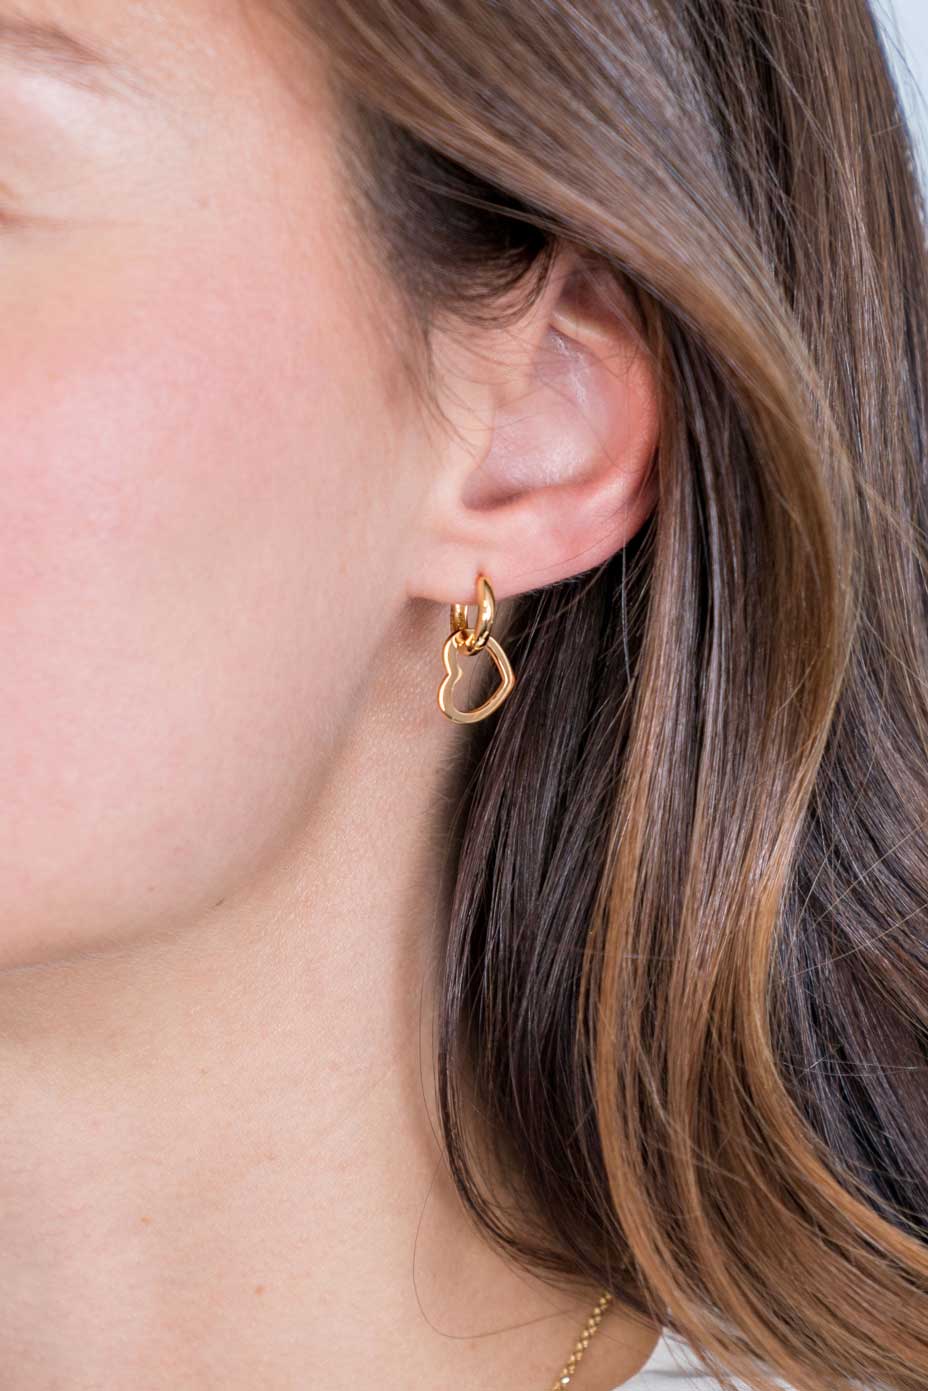 12mm ZINZI Gold Plated Sterling Silver Earrings Pendants Open Heart ZICH2197G (excl. hoop earrings)